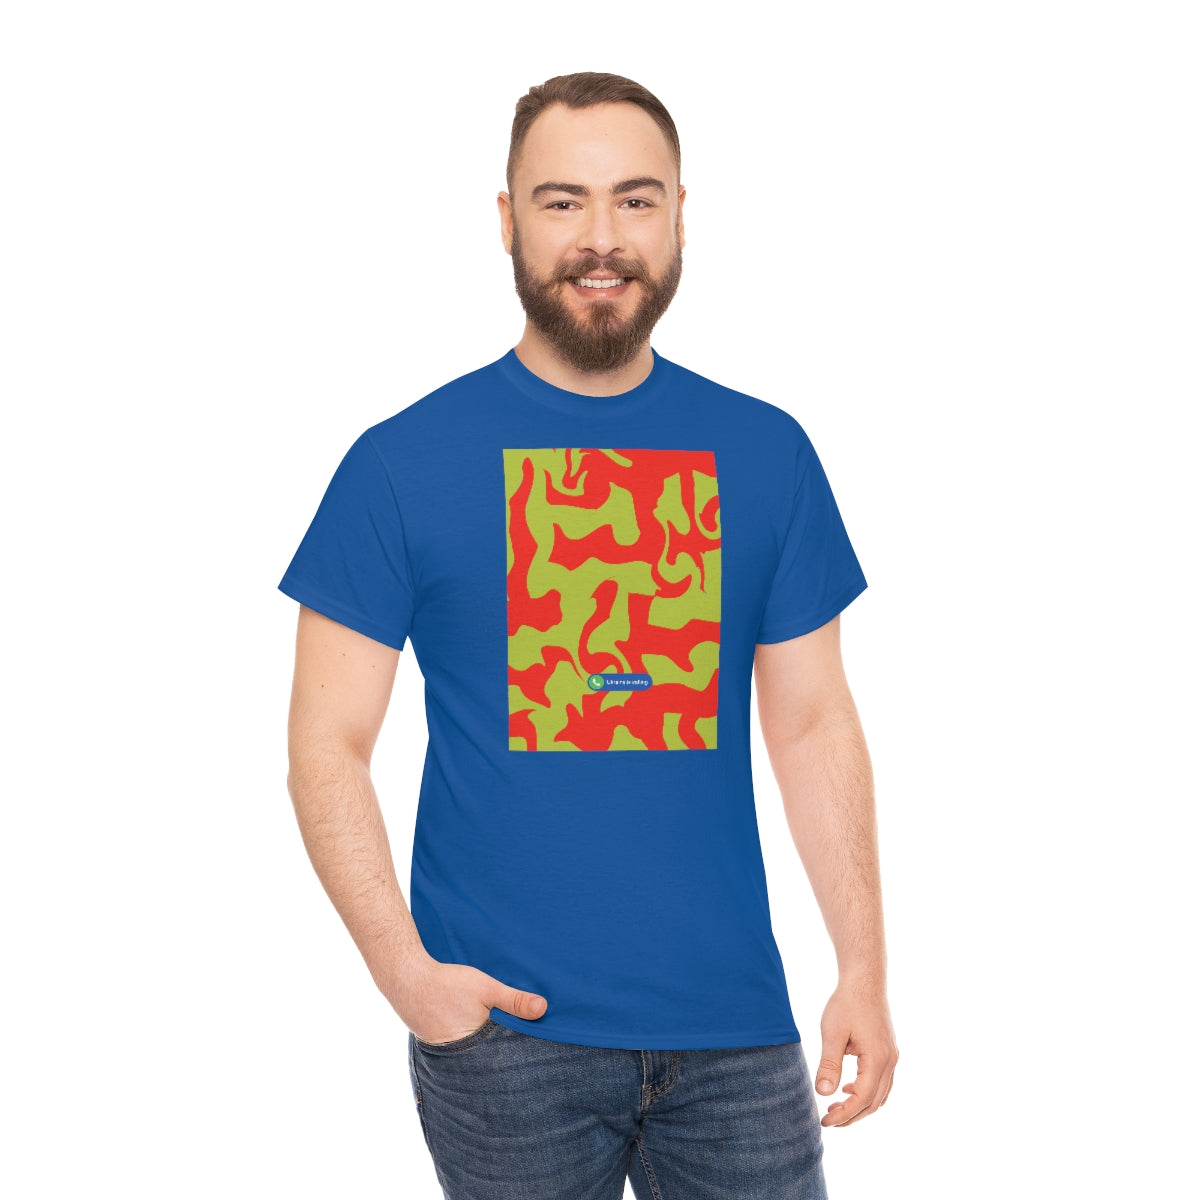 Hypno - T-shirt unisexe